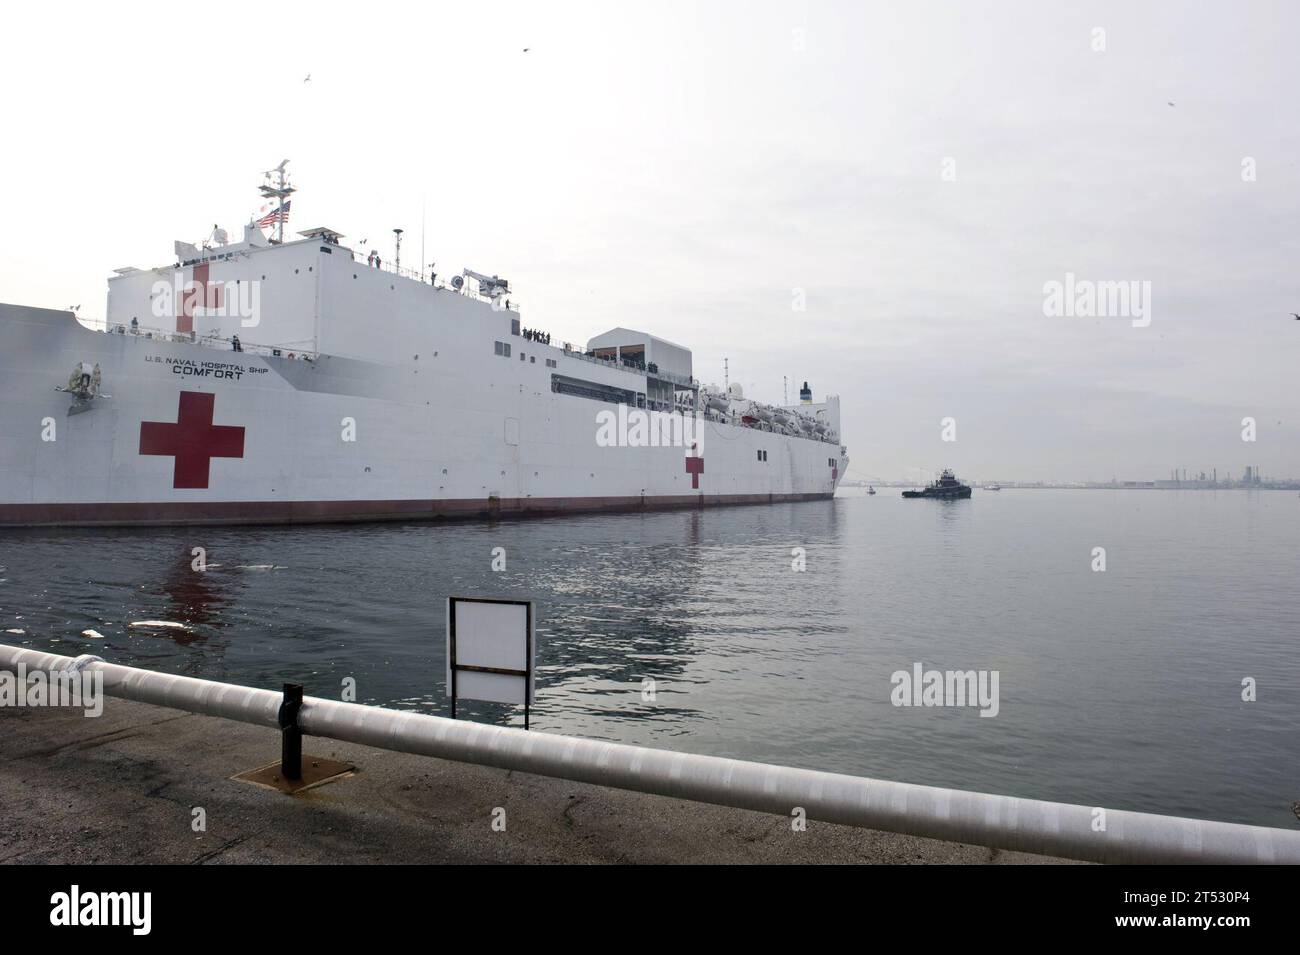 100116XXXXX-257 BALTIMORE, Md. (16. Januar 2010) das Krankenhaus-Schiff USNS Comfort (T-AH 20) fährt von Canton Pier ab, um einen kurzfristigen humanitären Einsatz nach Port-au-Prince, Haiti, durchzuführen. Das Schiff mit einer Besatzung von fast 850 Mitarbeitern, darunter 550 Mitglieder des medizinischen Dienstes der US Navy, wird anderen Mitgliedern der US-Streitkräfte, gemeinnützigen humanitären Organisationen und Such- und Rettungsteams aus der ganzen Welt helfen, die durch das Erdbeben vom 12. Januar vertriebenen Haitianer zu unterstützen. Comfort's Medical Treatment Facility hat die Fähigkeit, bedeutende medizinische Stockfoto